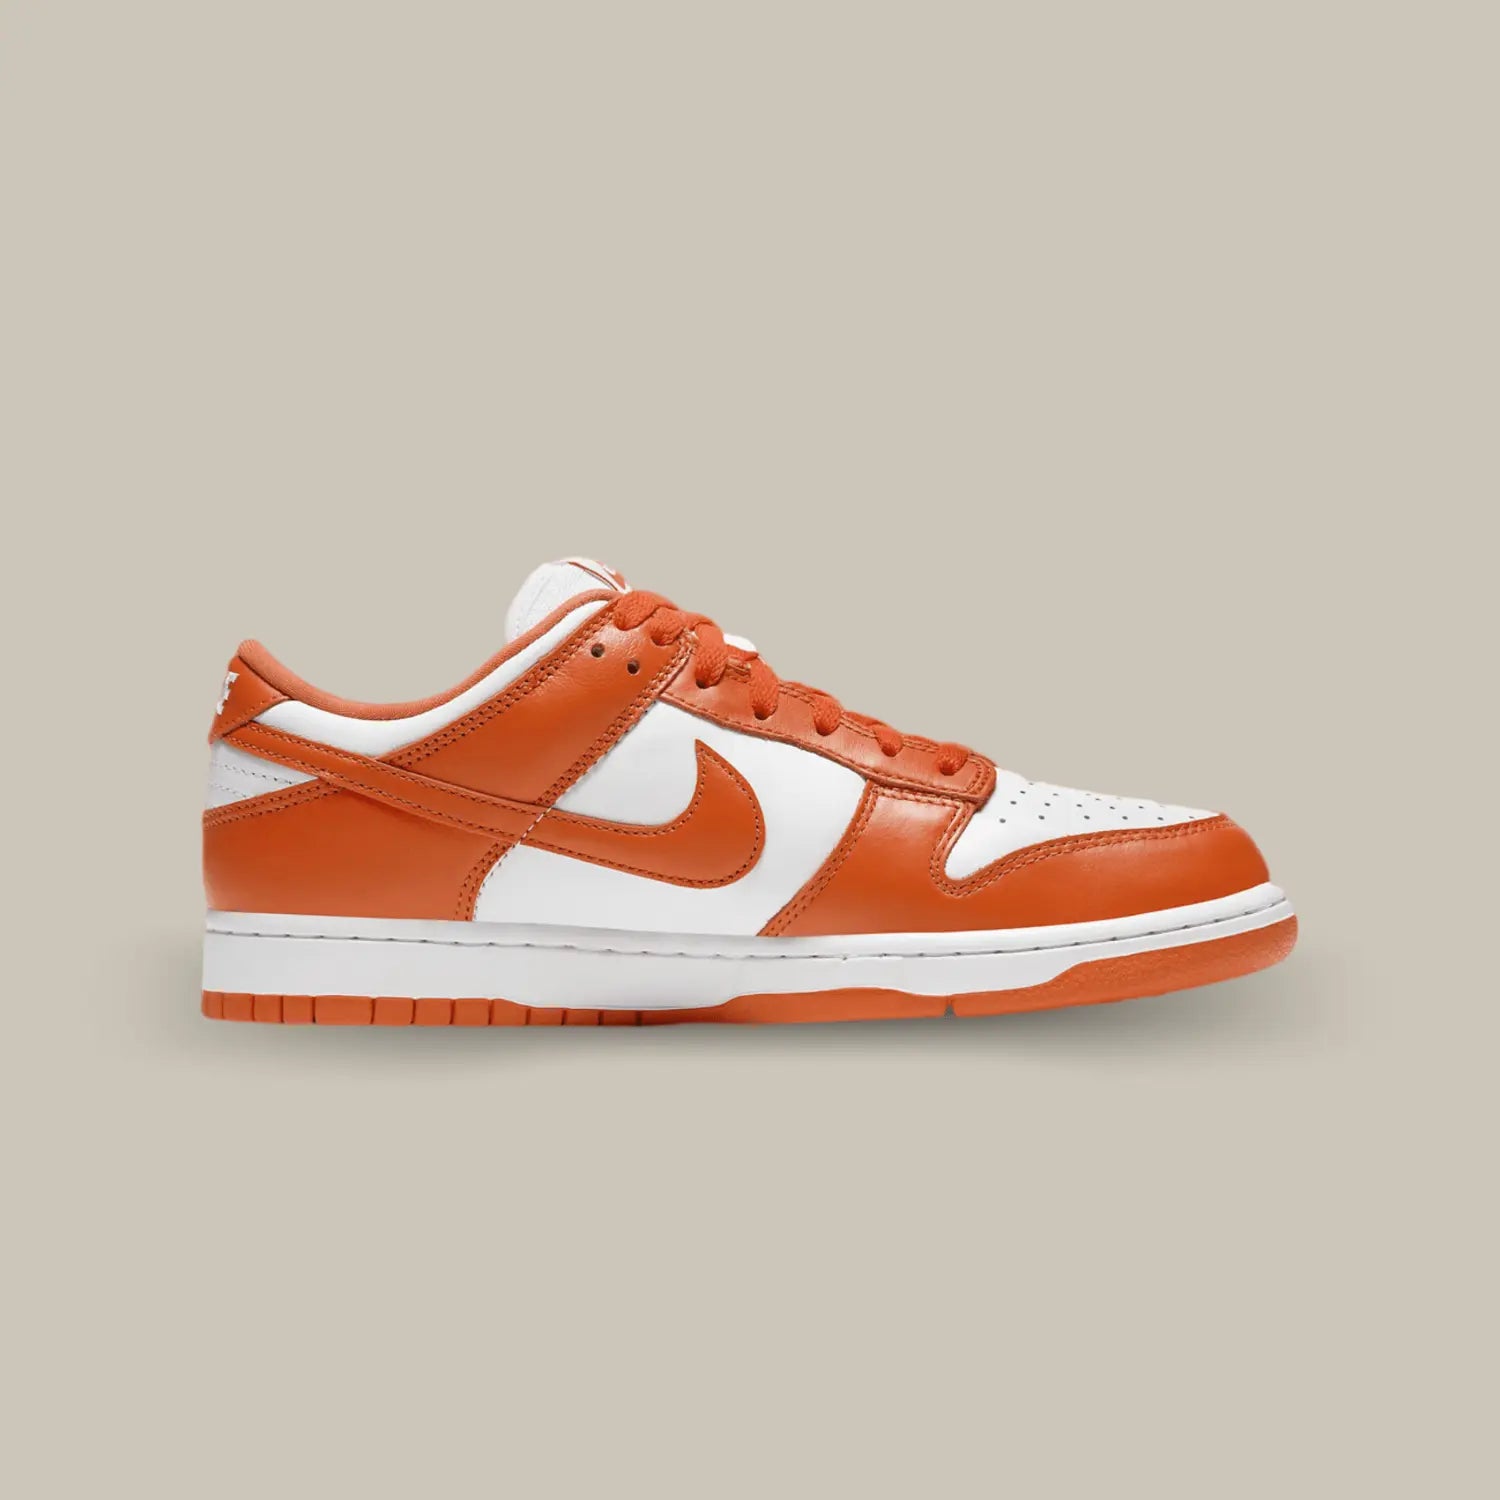 La Nike Dunk Low Syracuse de coté avec une base en cuir blanc et des empiècements orange.